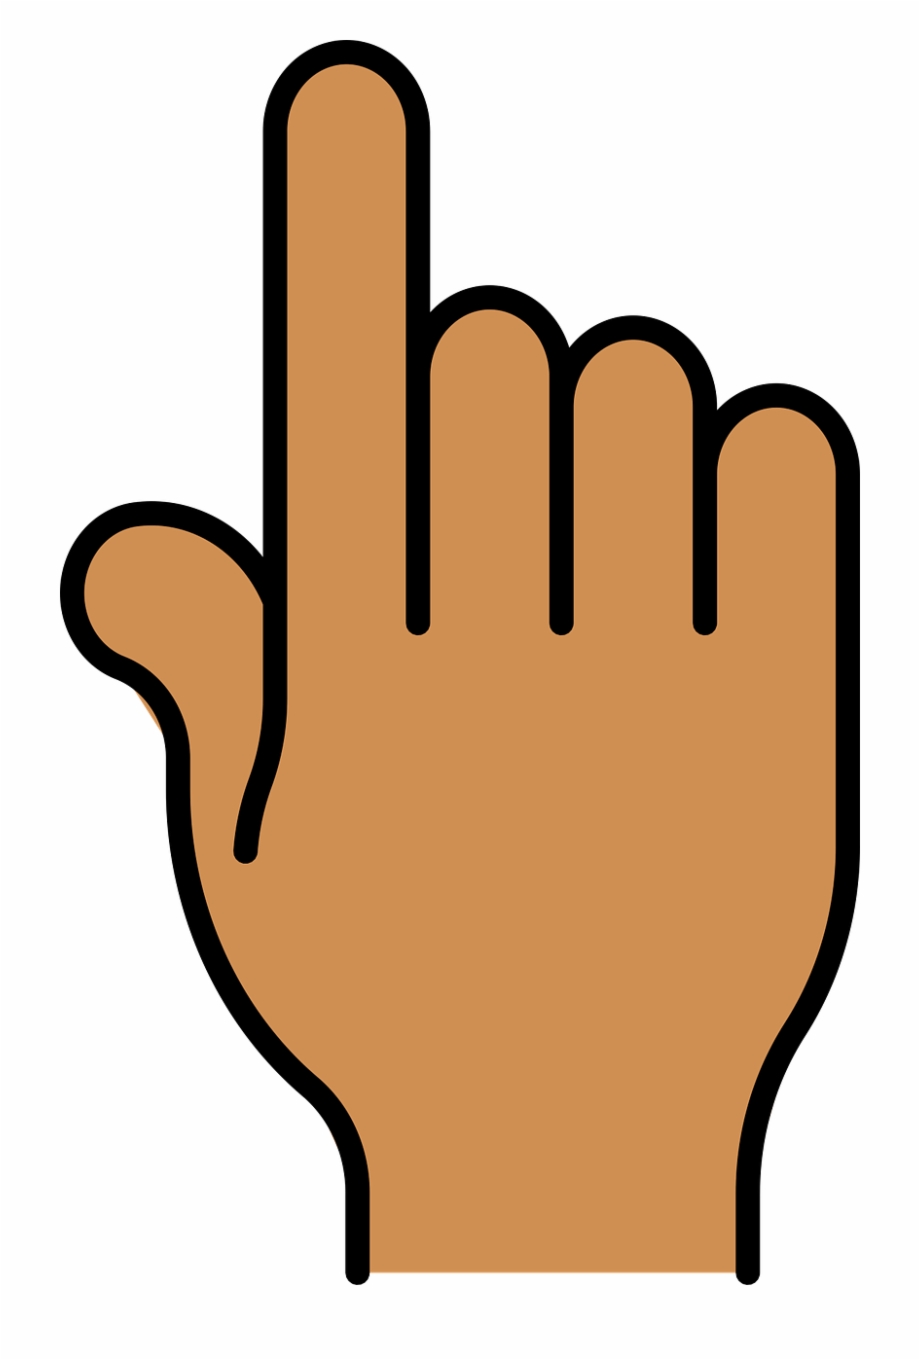 Index Finger Pointer Click Hand Png Image Finger